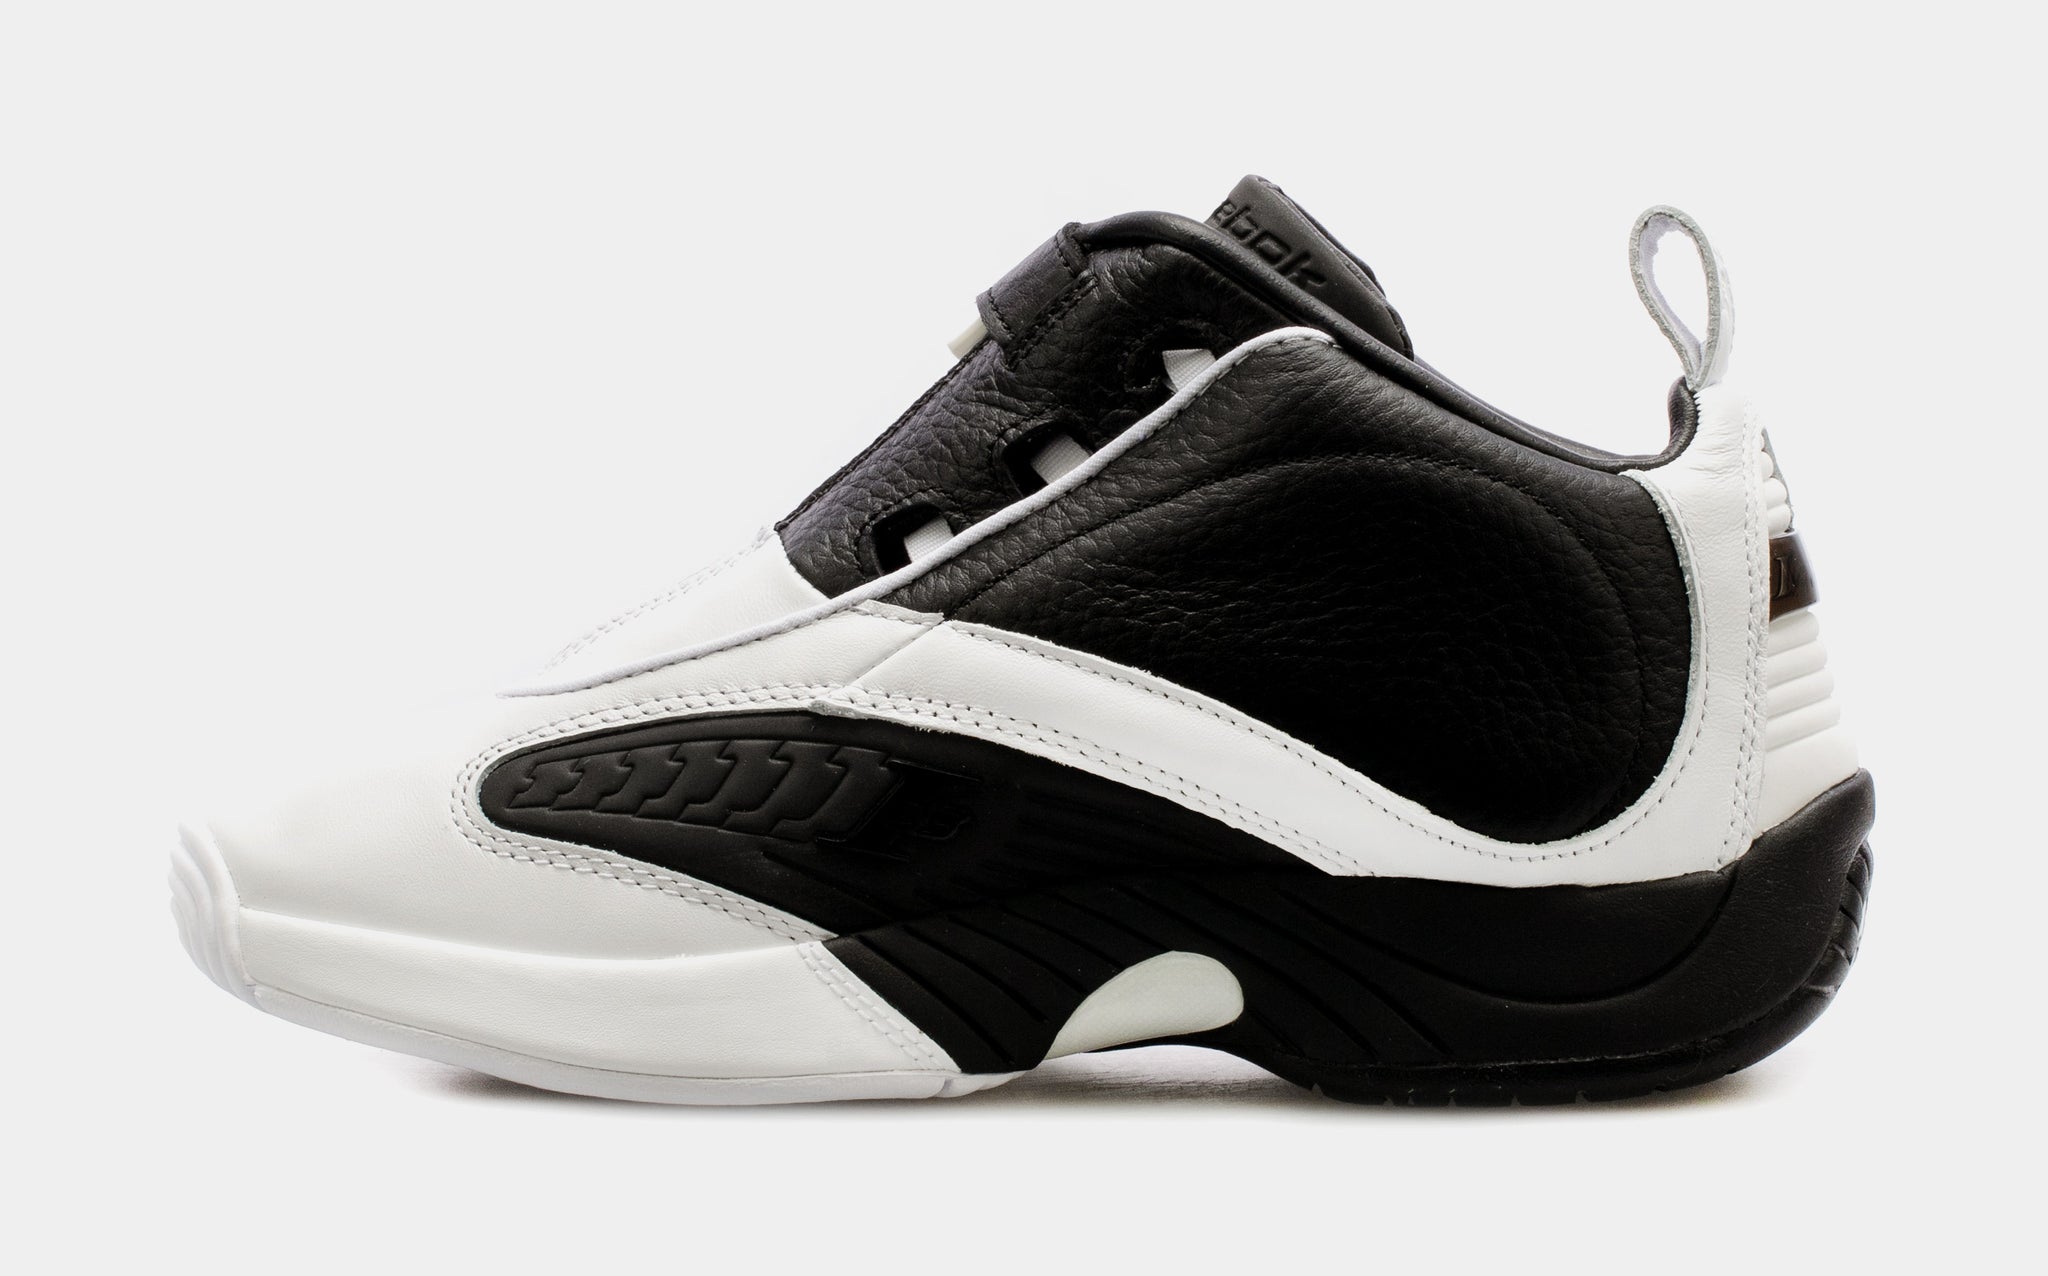 Reebok Men's Answer IV Basketball Shoes Black/White 9